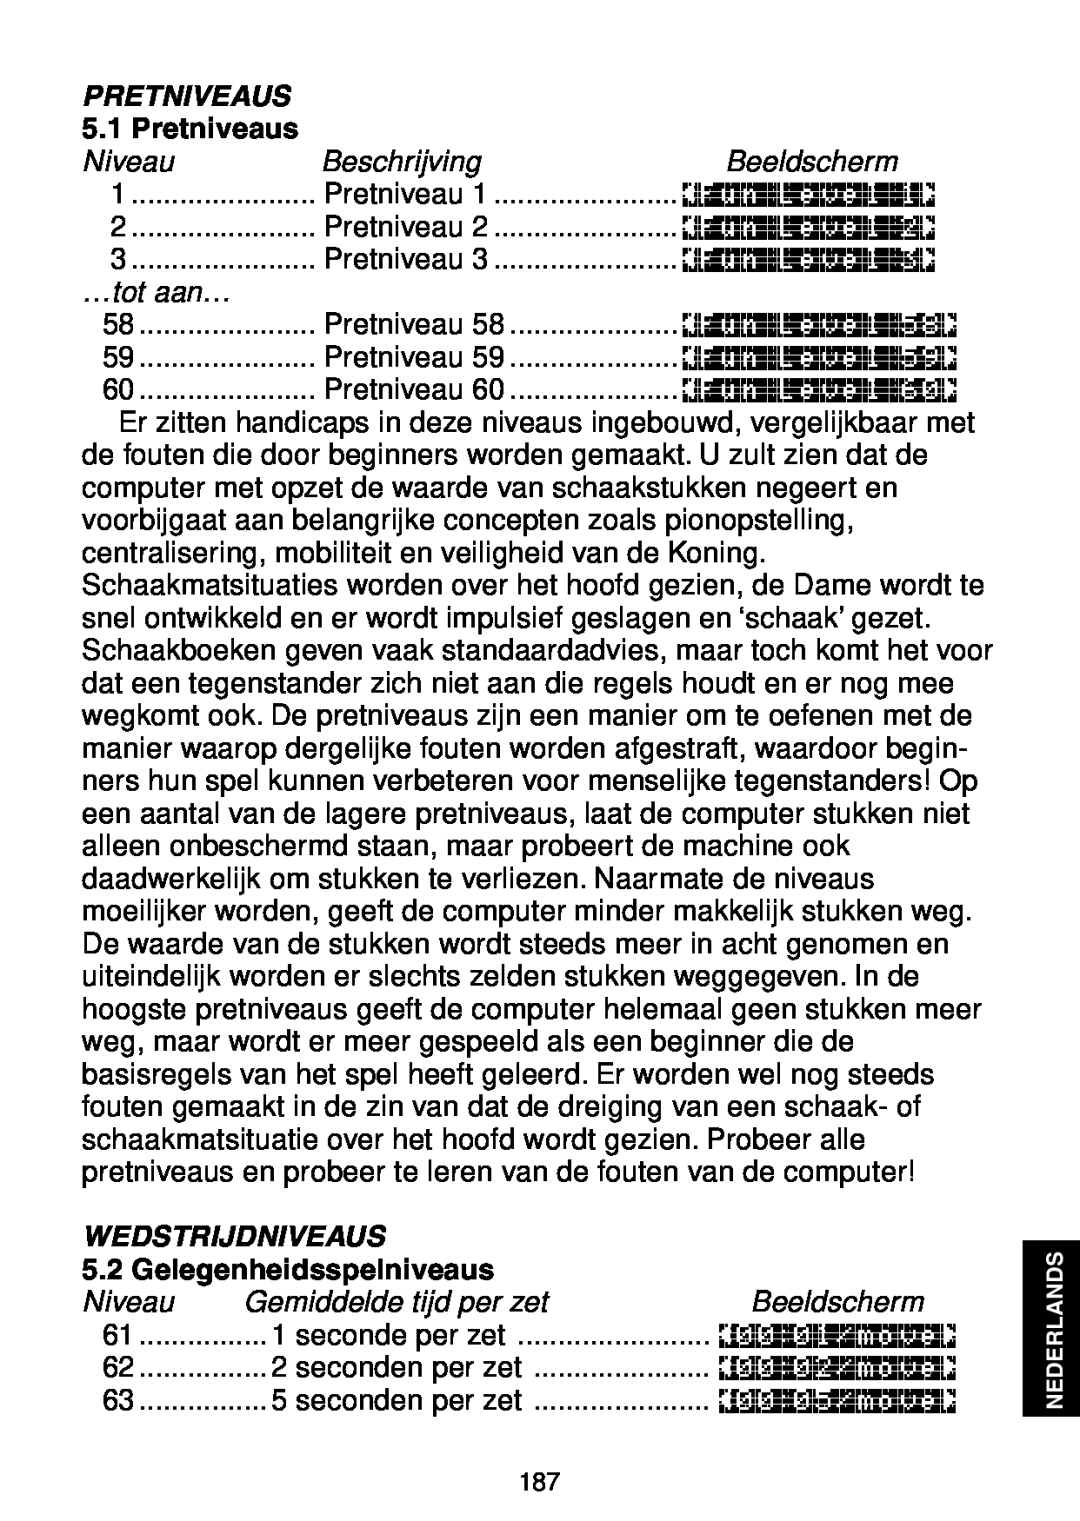 Saitek Maestro Travel Chess Computer manual Pretniveaus, Niveau, Beschrijving, Beeldscherm, …tot aan…, Wedstrijdniveaus 